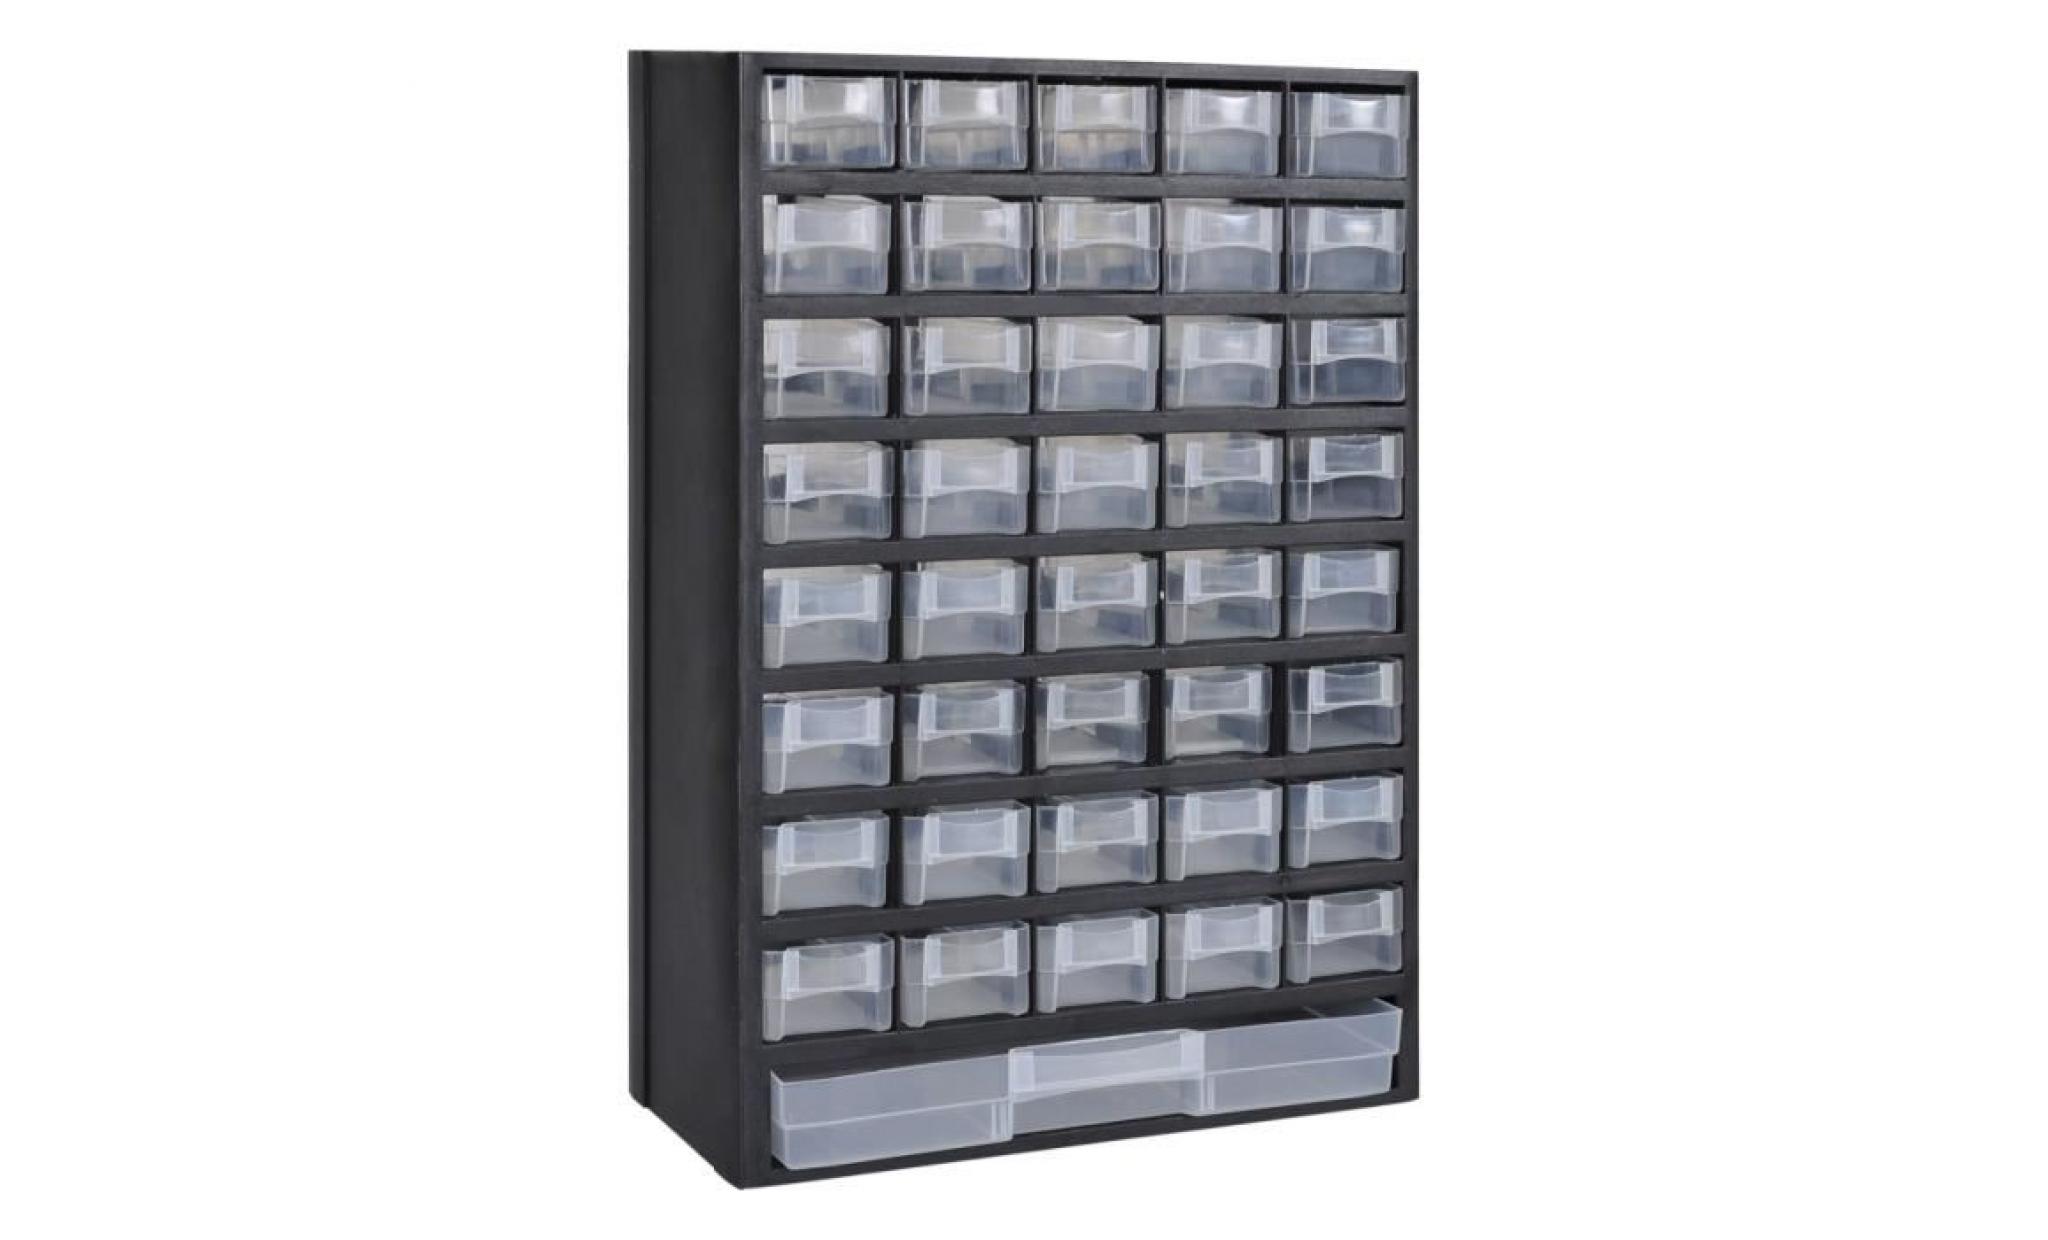 41 tiroirs armoire/module/casier de rangement en plastique 31 x 13.8 x 49cm pour chambre bureau école